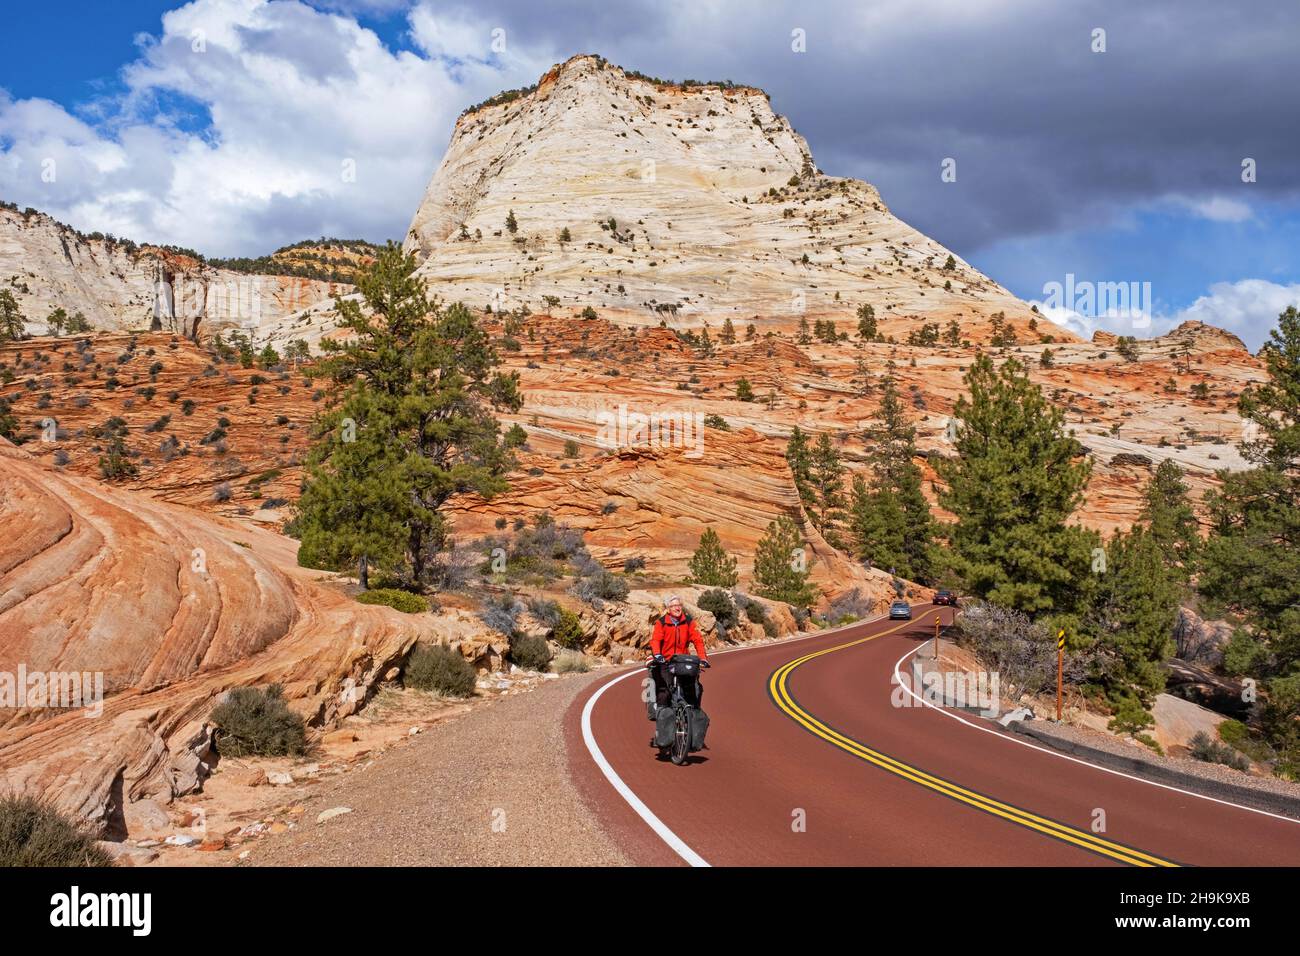 Solitaire de cyclisme cycliste sur la route à travers les montagnes de grès rouge du parc national de Zion, Utah, États-Unis, États-Unis Banque D'Images